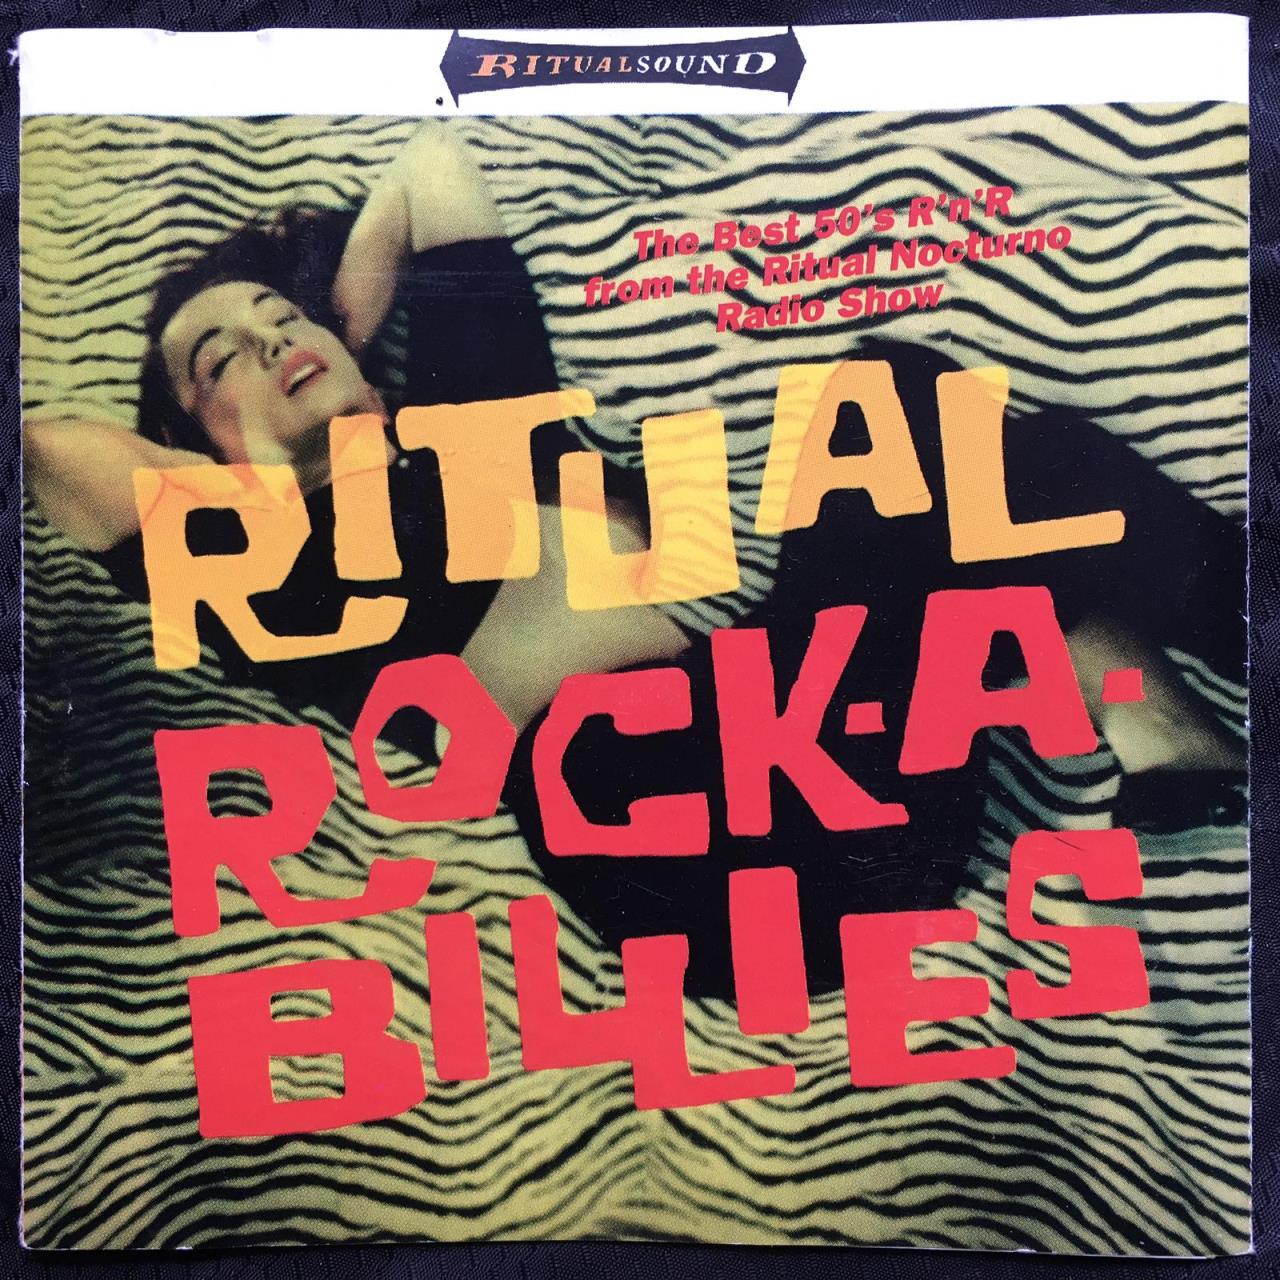 A.A.V.V. – Ritual Rock-A-Billyes The Best R’n’R From The Ritual Nocturne Radio Show cover album